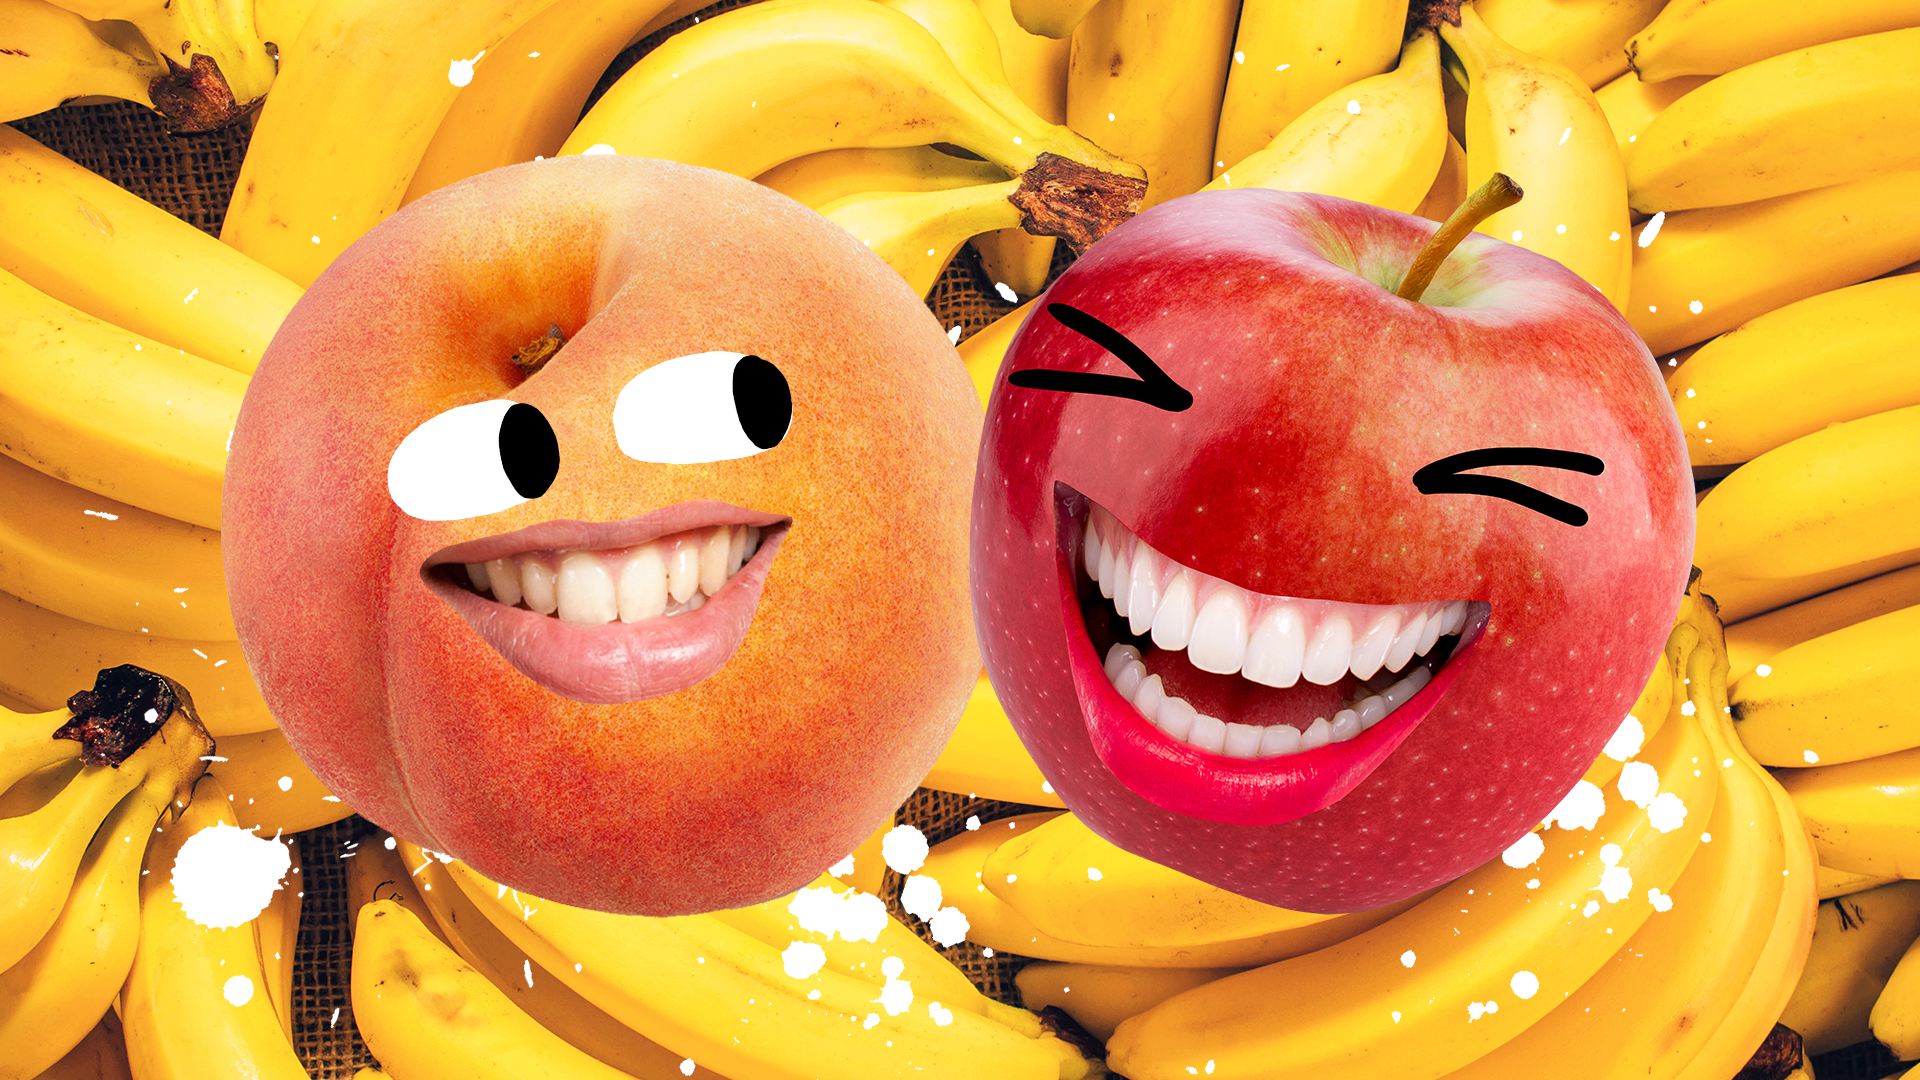 A peach and an apple